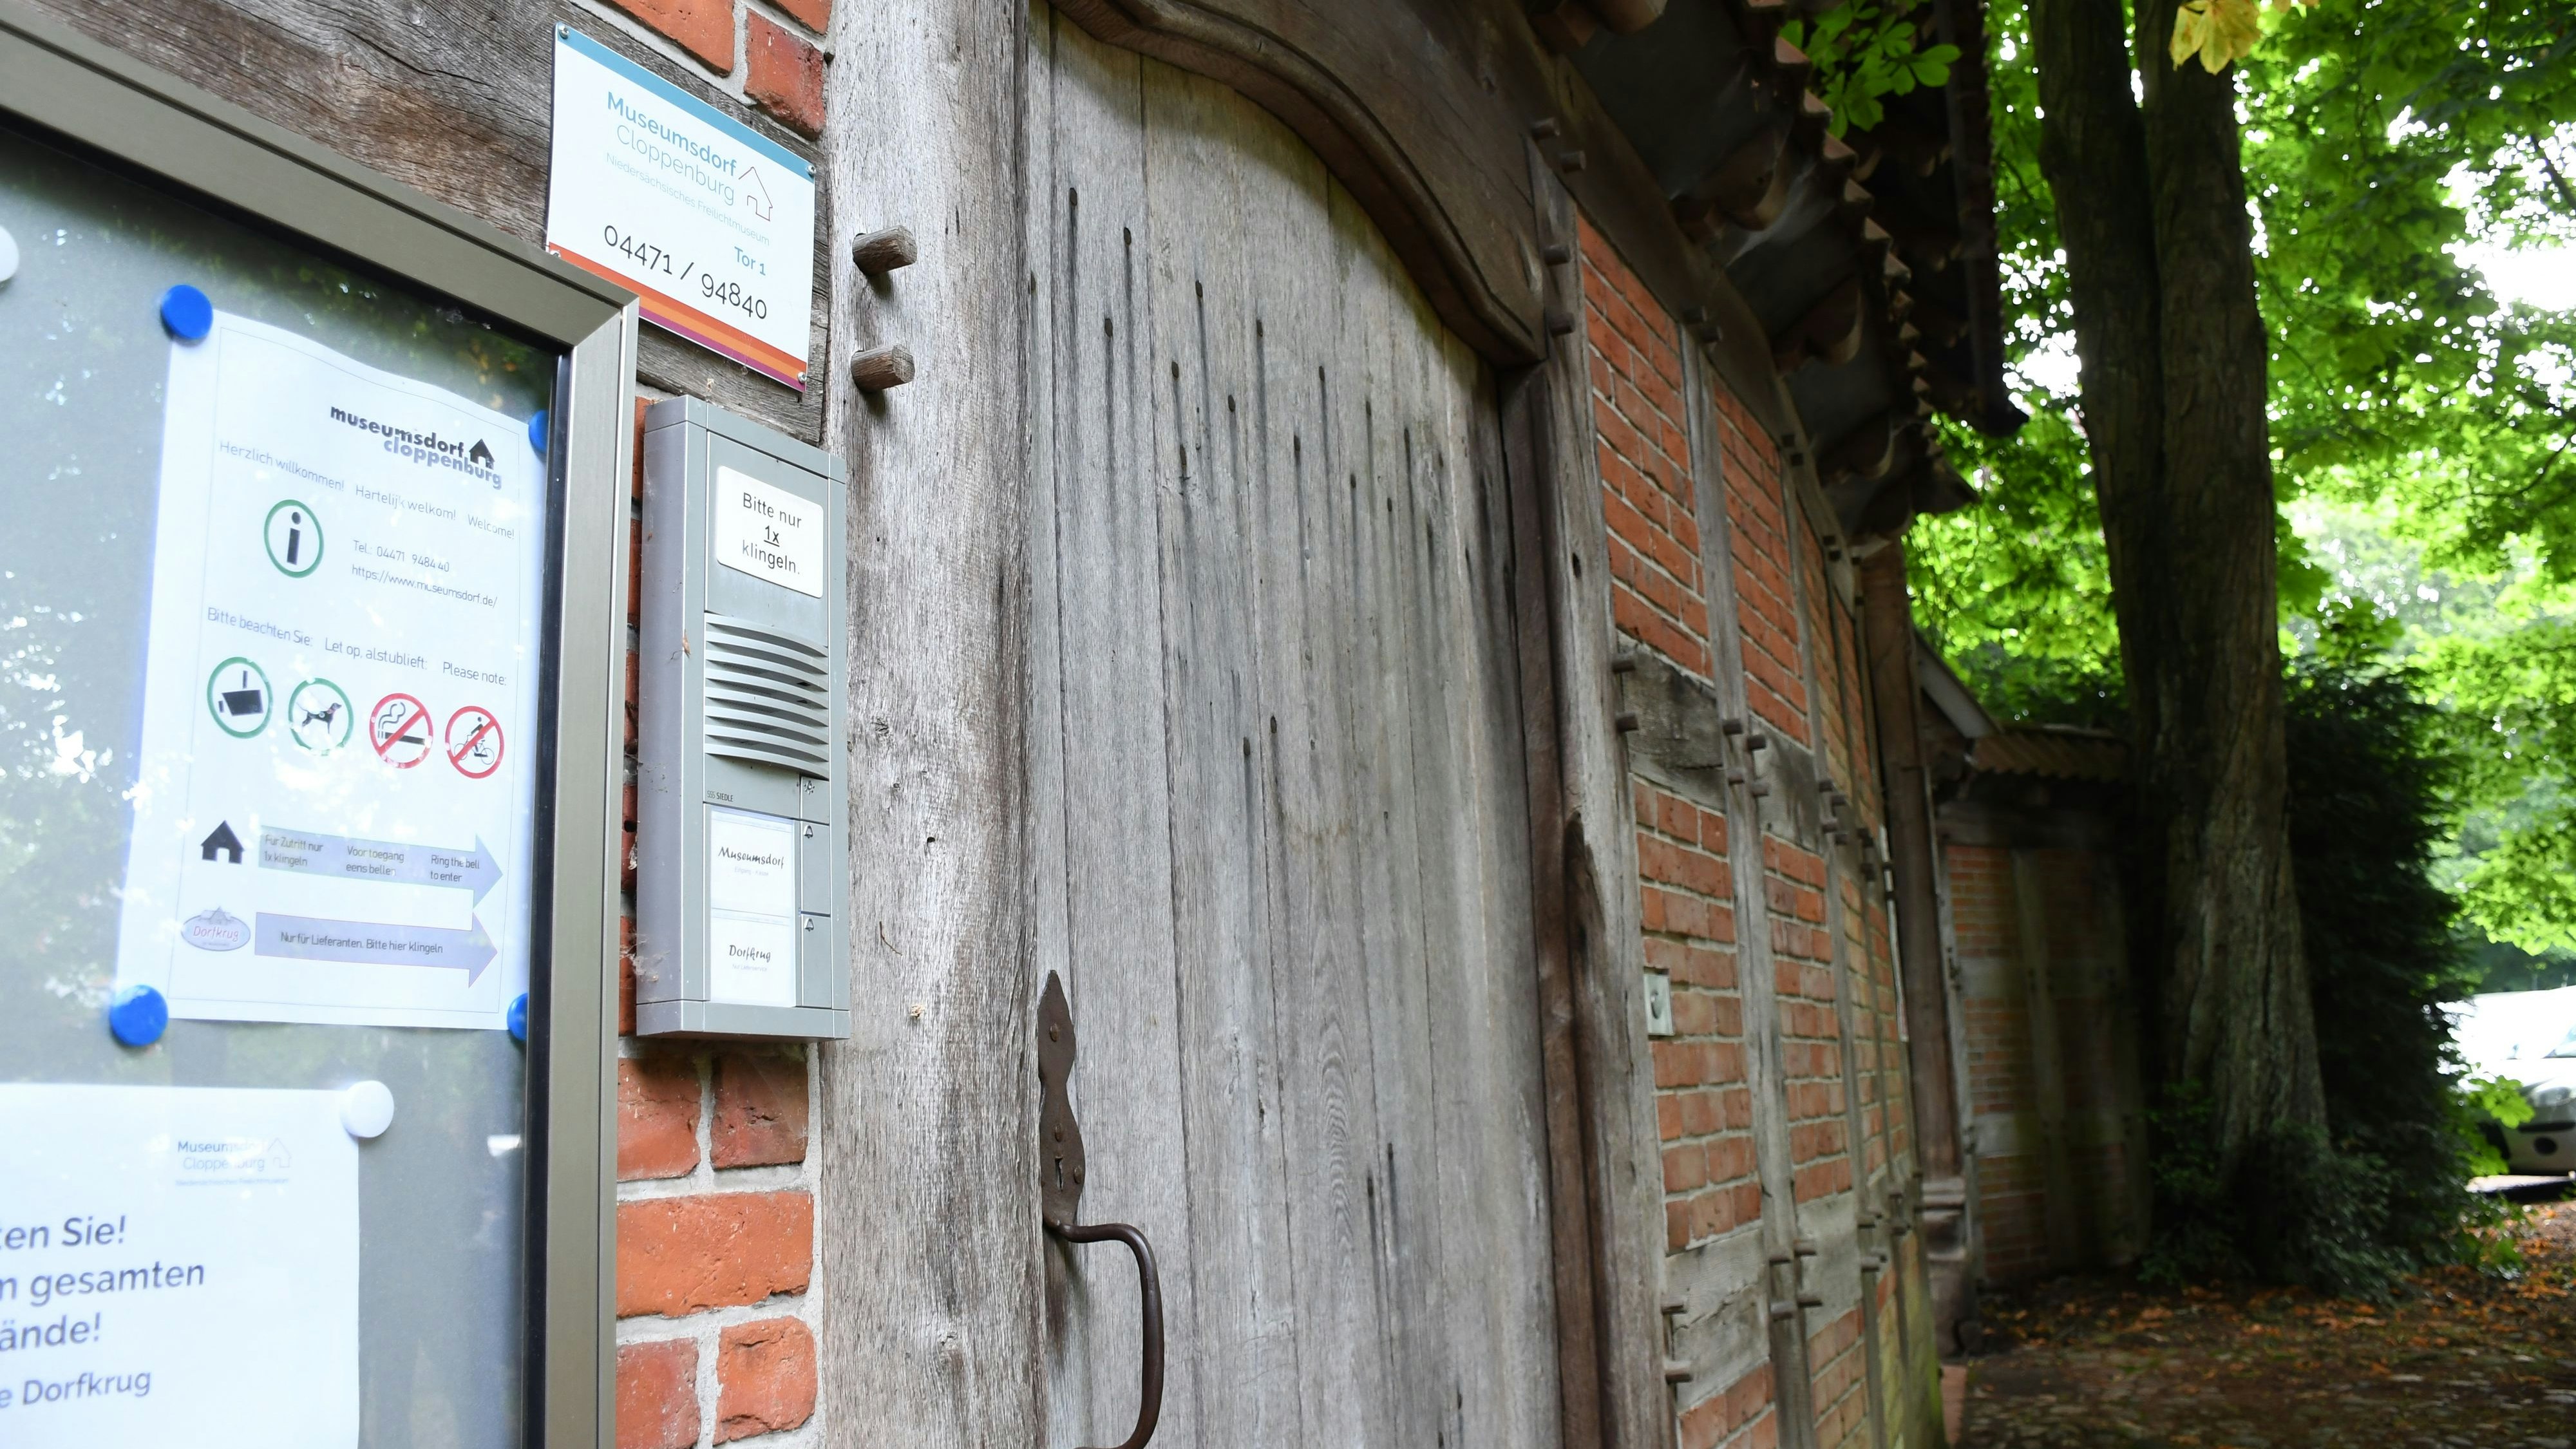 Tür zu: Der alte Eingang, den vor allem Cloppenburger bevorzugen, ist noch verschlossen - obwohl ihn das Museum gern öffnen würde. Foto:Kreke